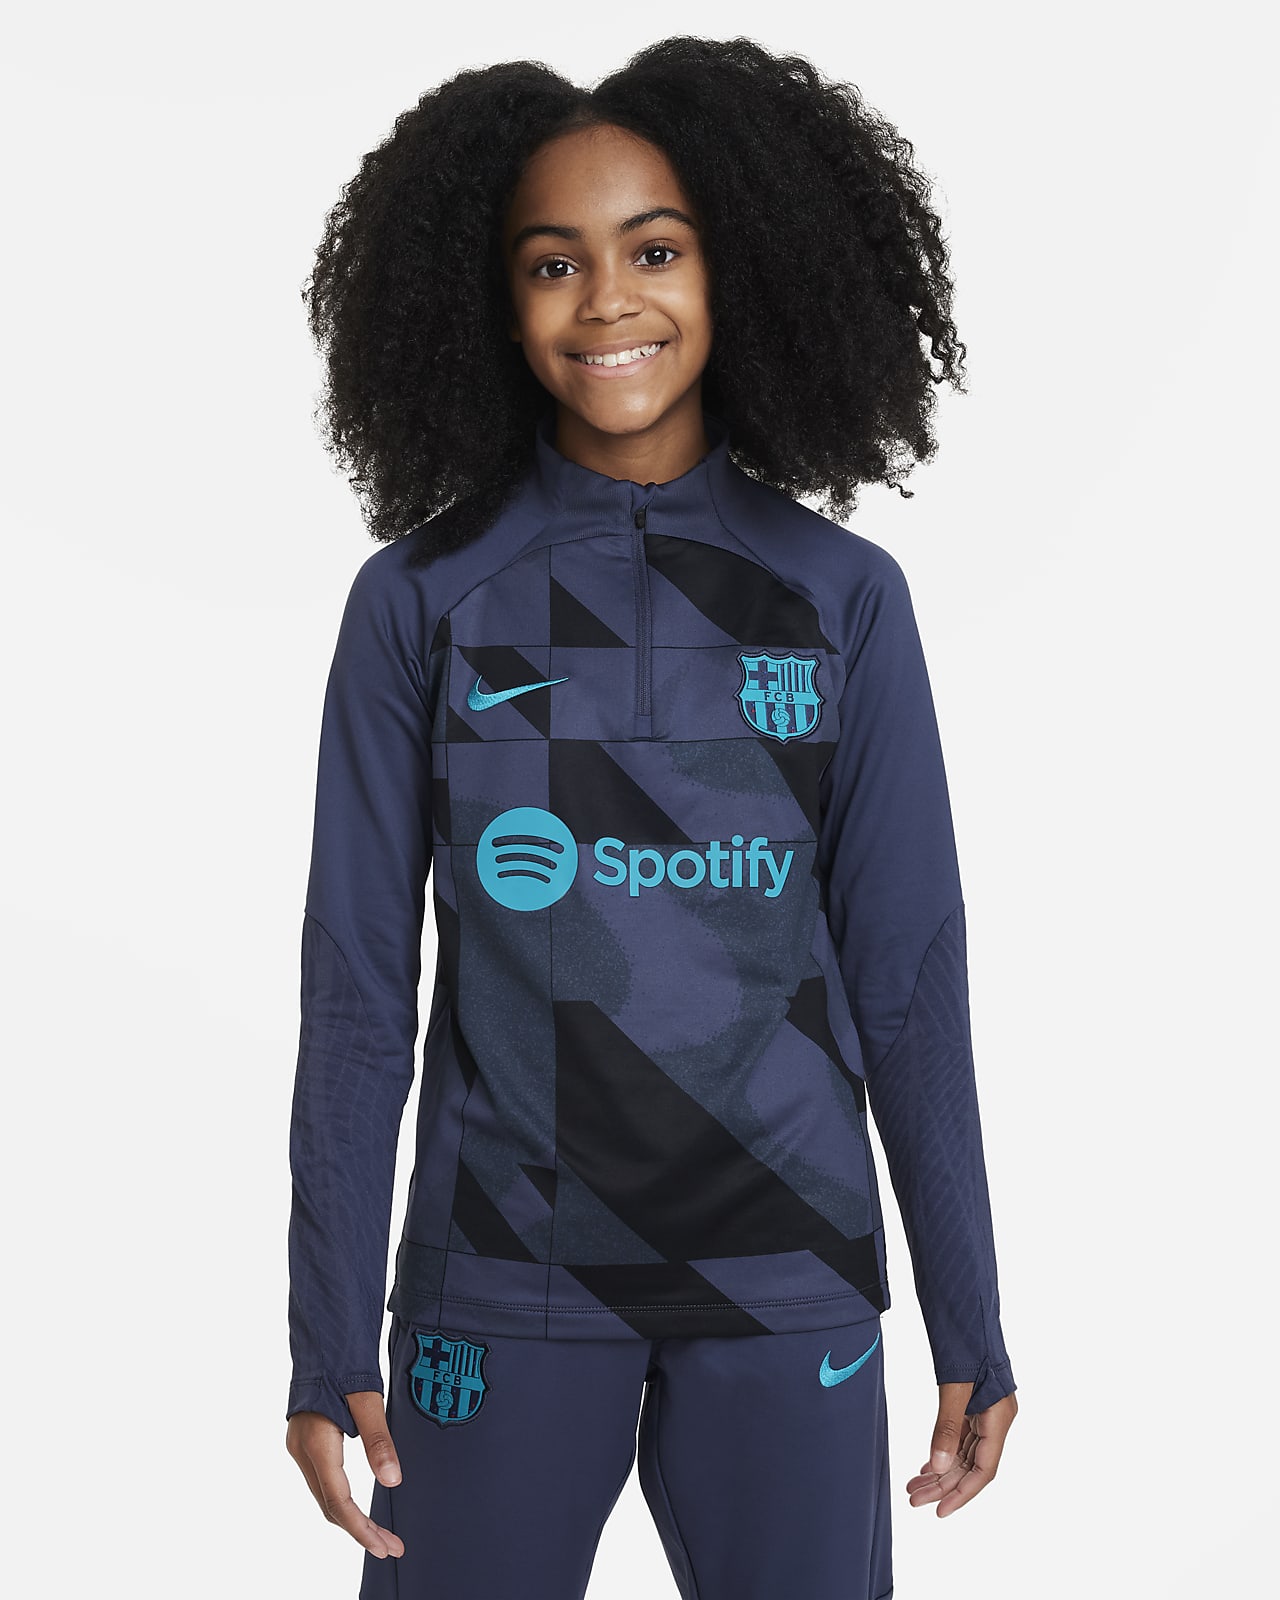 Ποδοσφαιρική μπλούζα προπόνησης-προθέρμανσης Nike Dri-FIT εναλλακτικής εμφάνισης Μπαρτσελόνα Strike για μεγάλα παιδιά